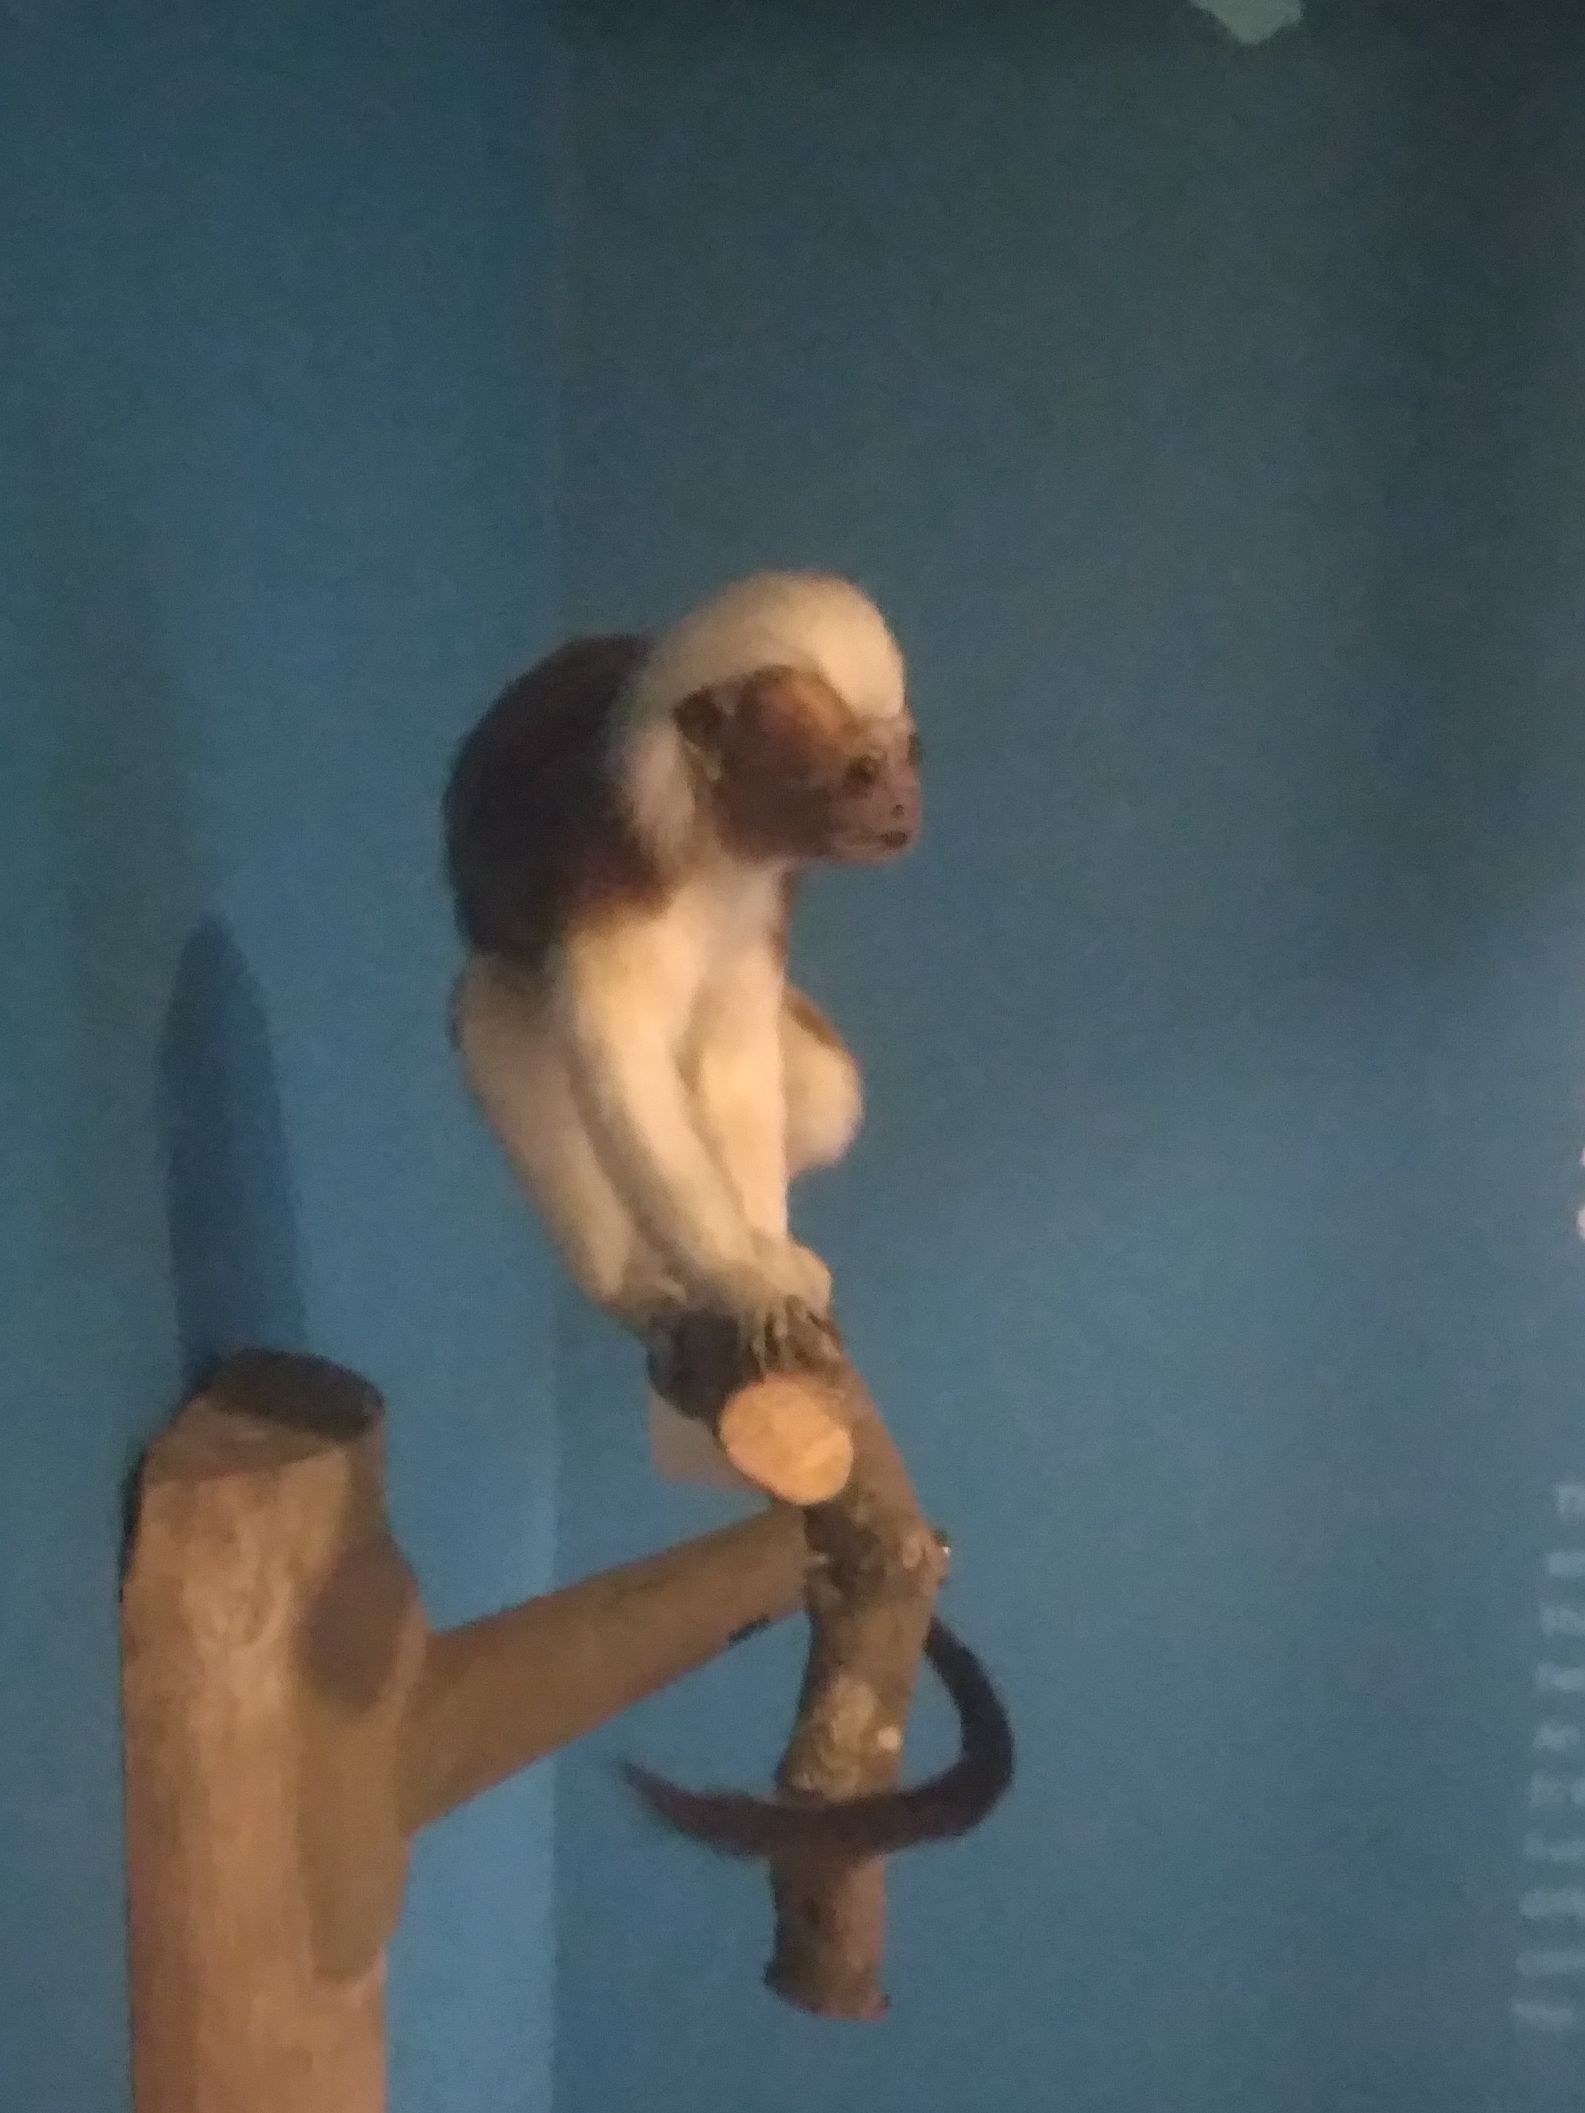 Ha tényleg így néznének ki a majmok, nem mernék belépni az esőerdőbe, de szerintem más se